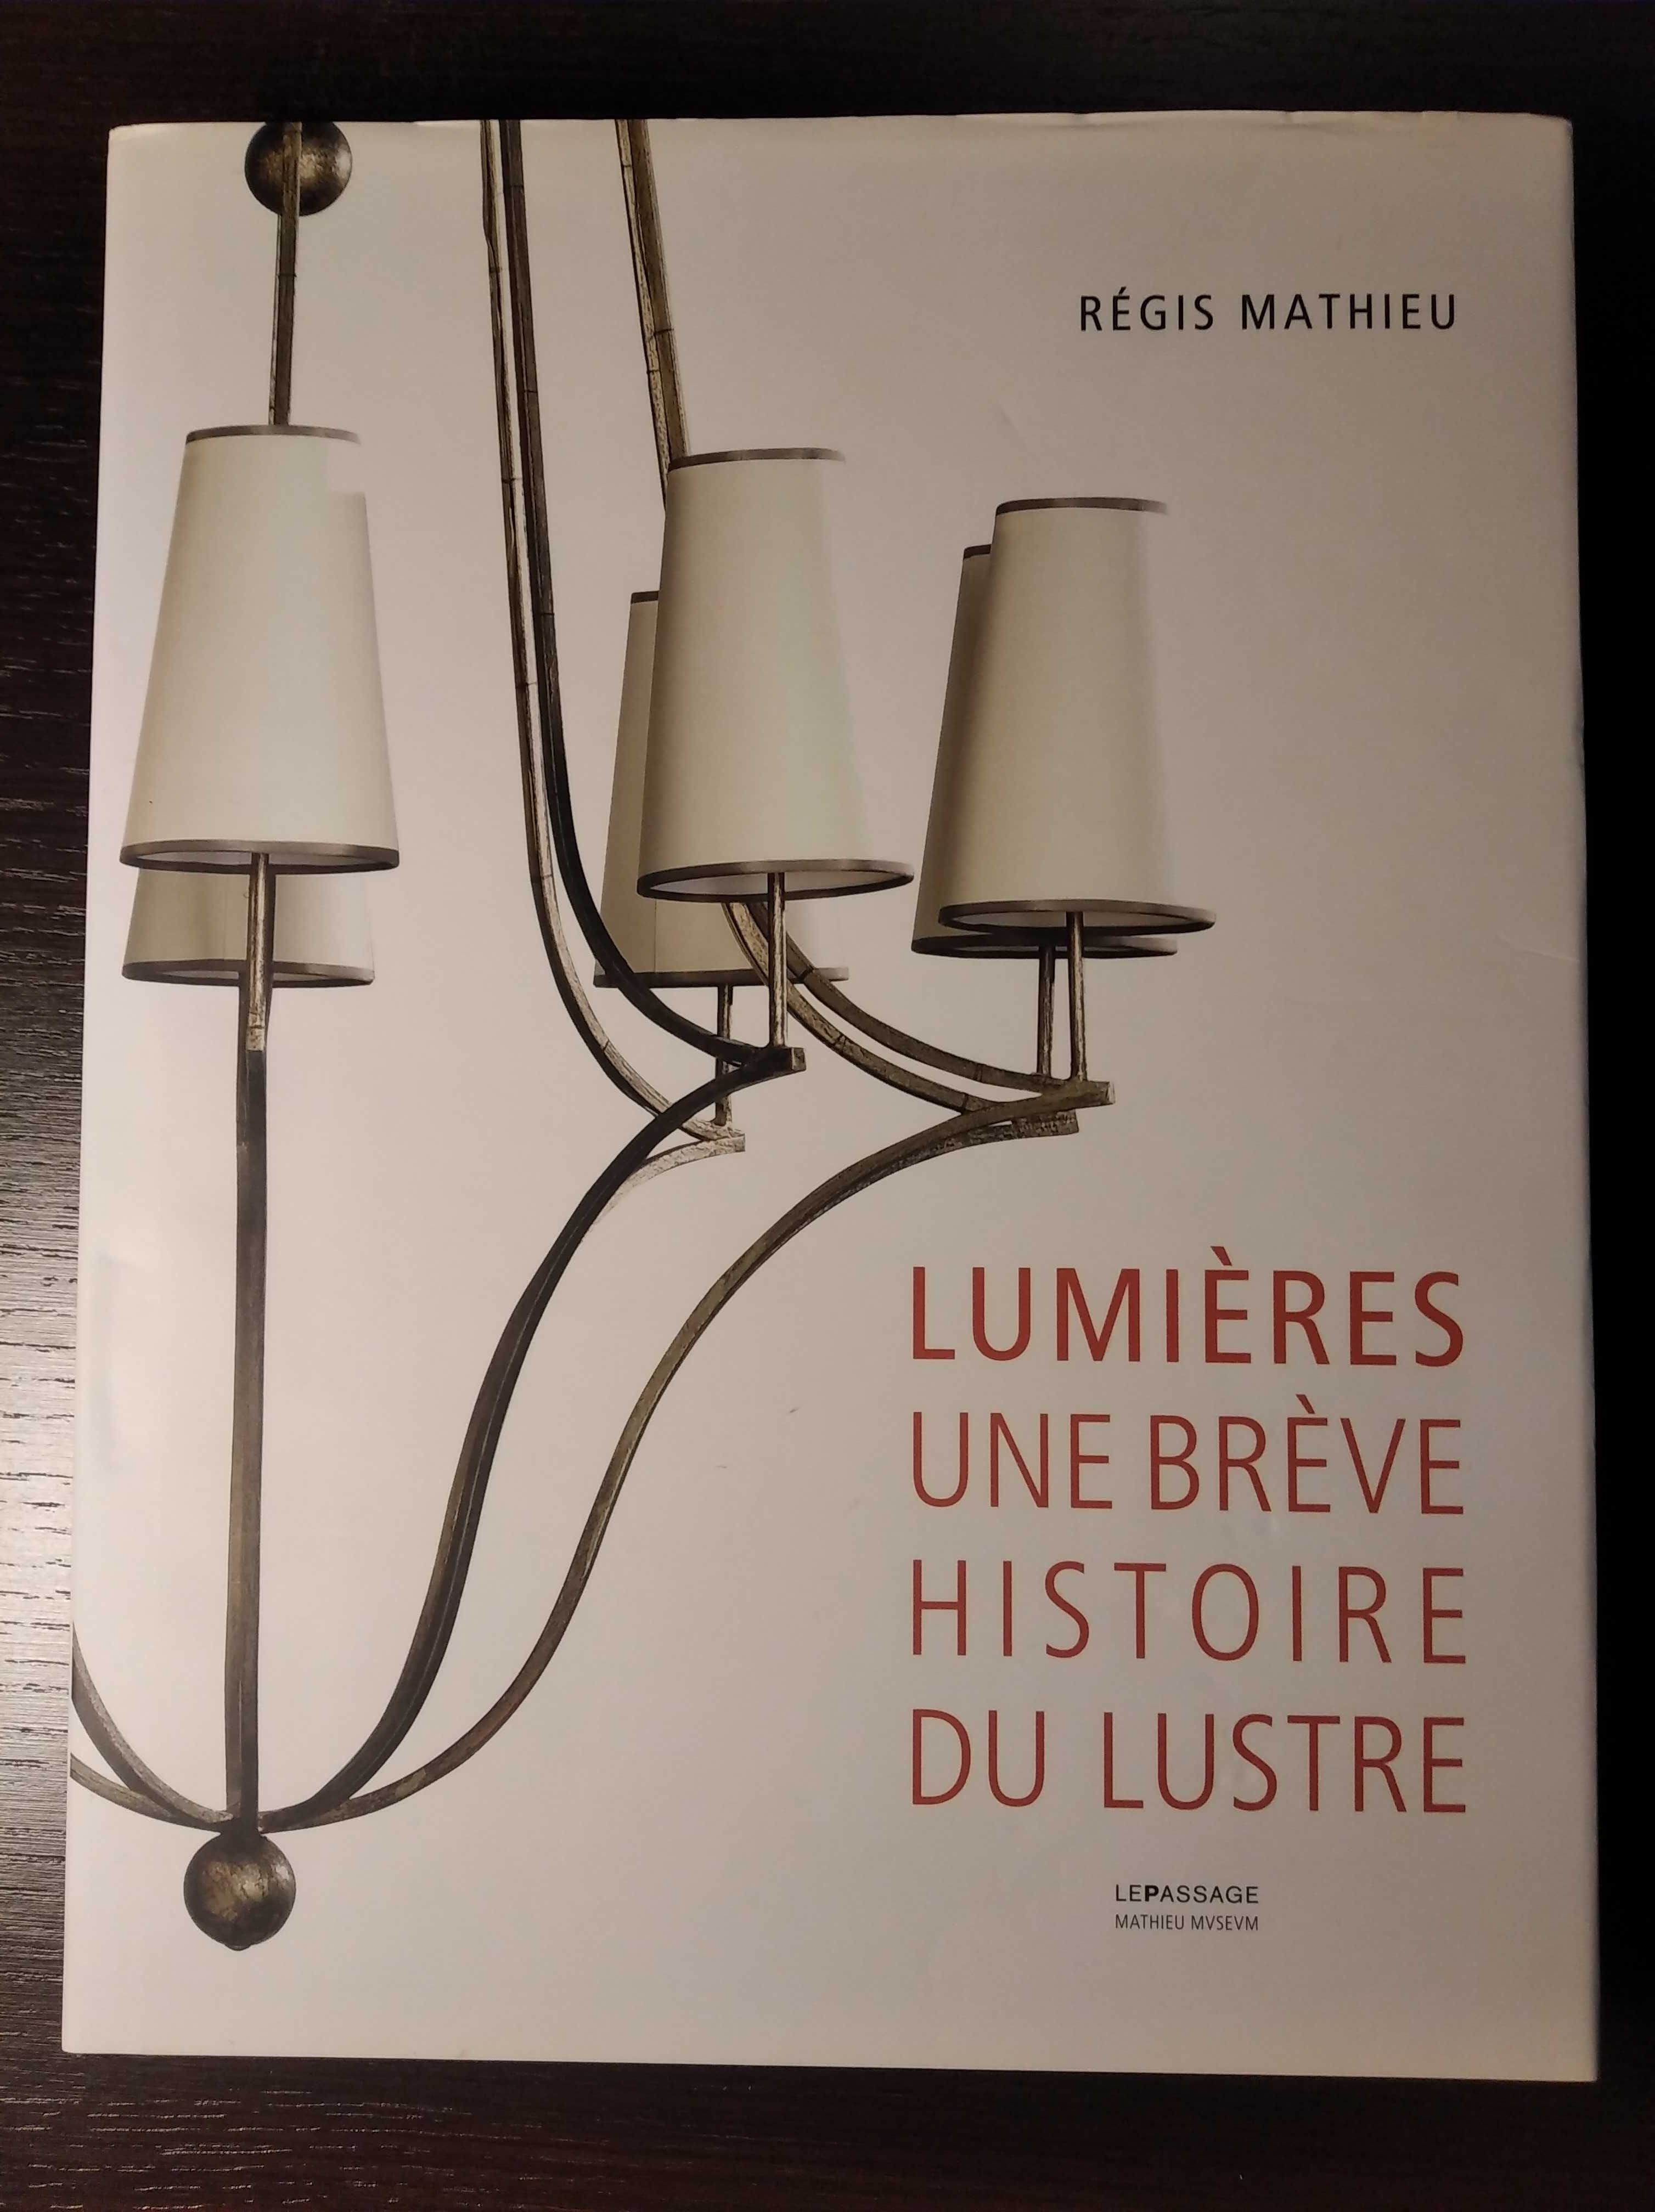 Livro "Lumières - Une Brève Historie du Lustre"